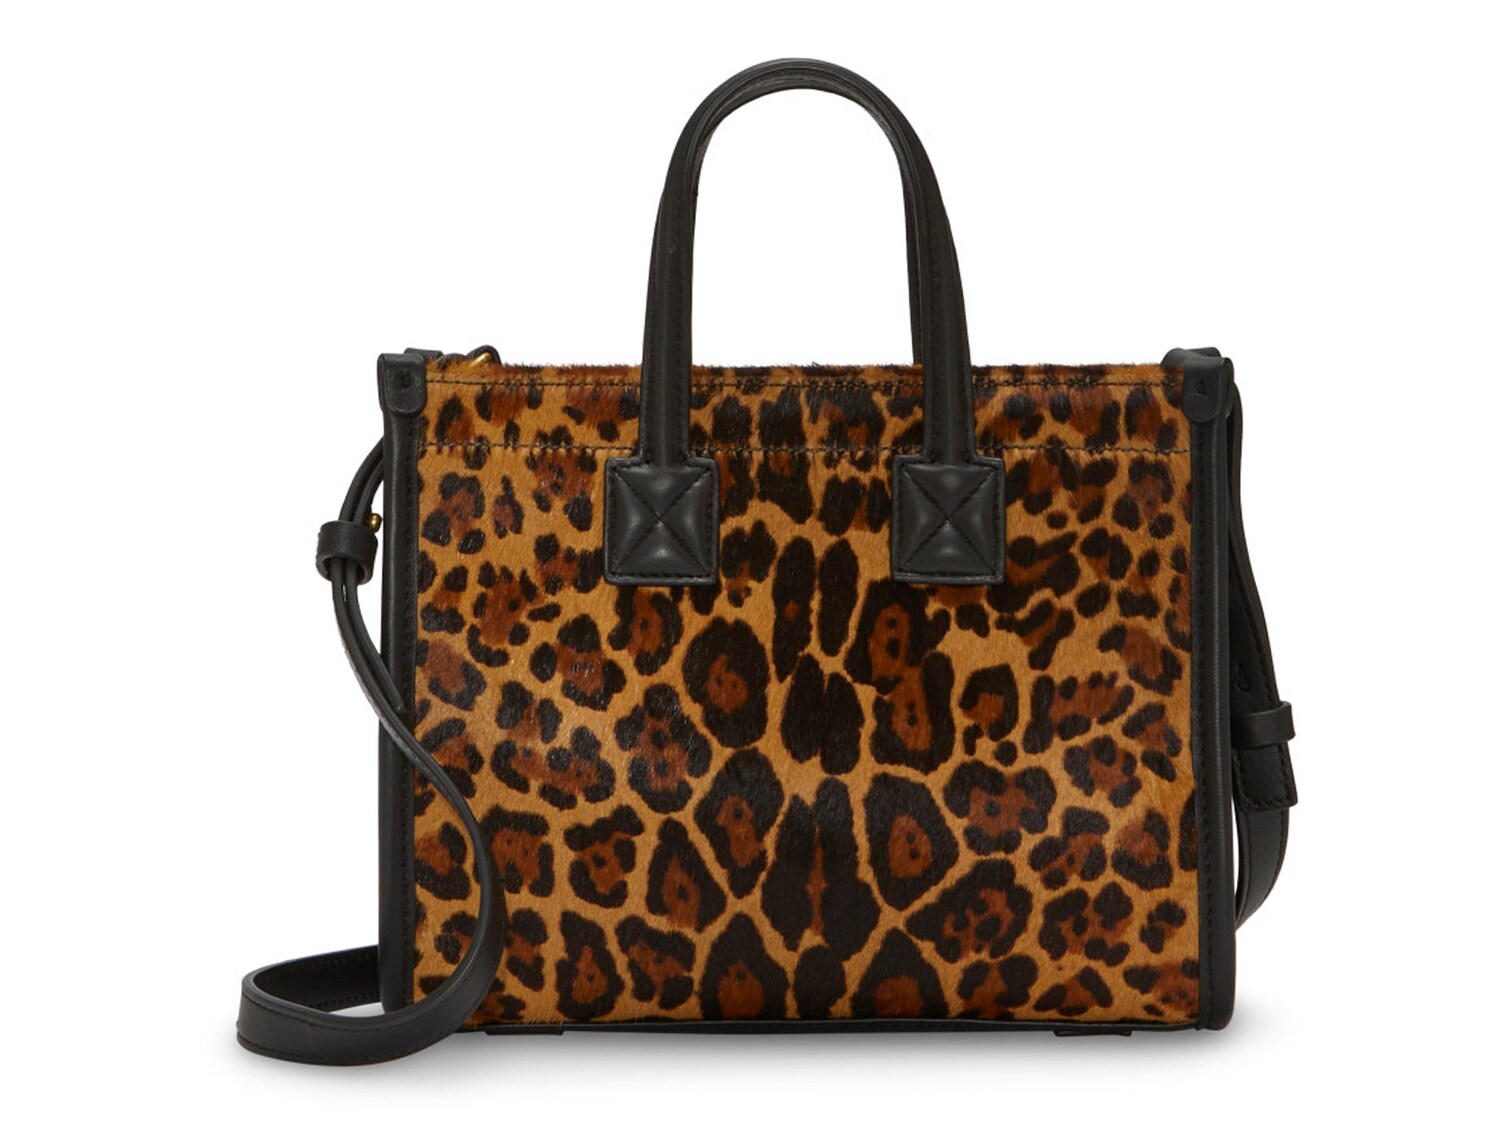 Кожаная мини-сумка Vince Camuto Saly, коричневый/черный леопардовый принт сумка мессенджер vince camuto 0317dt0053